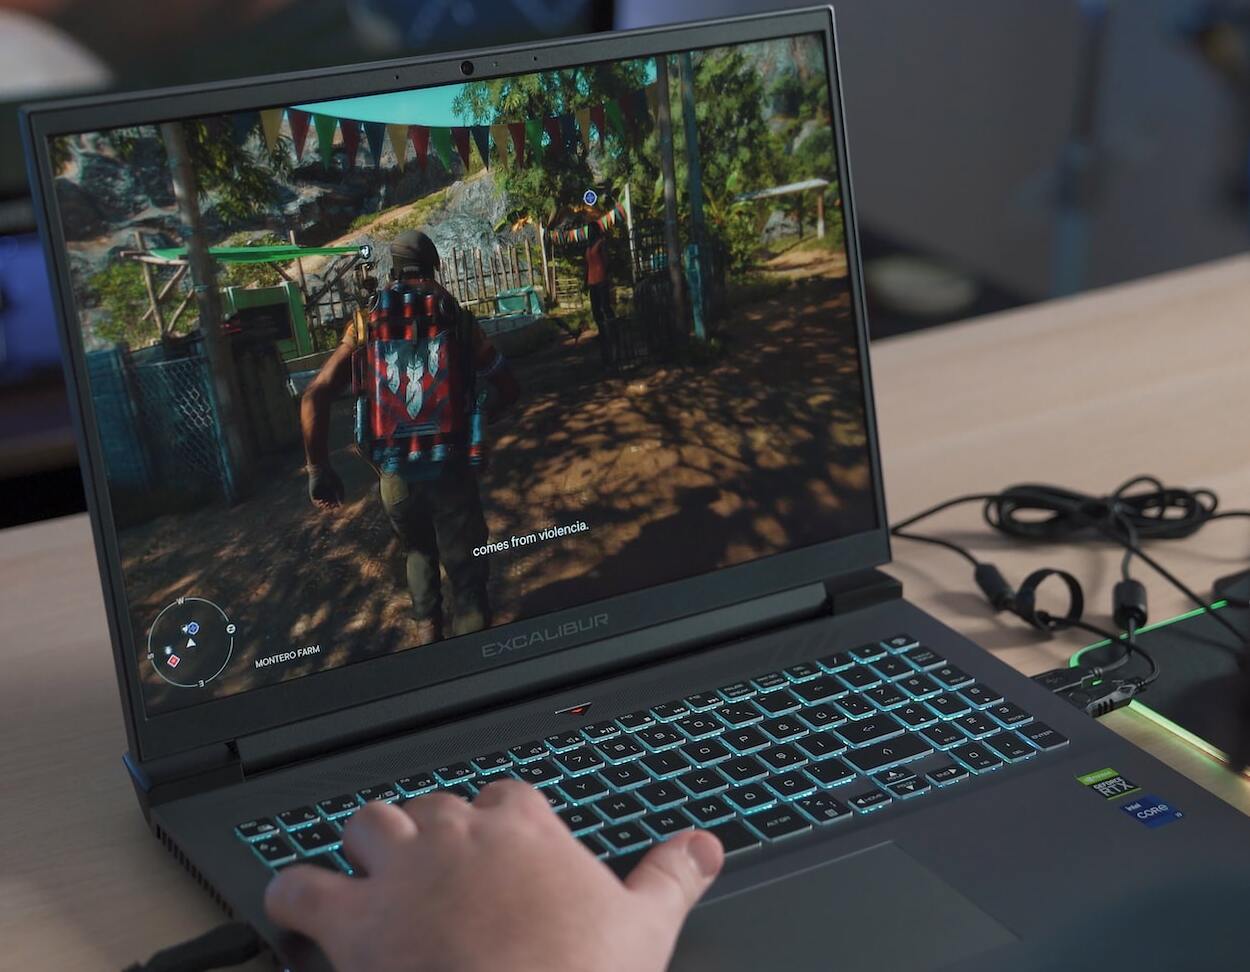 Gracz korzystający z laptopa gamingowego.